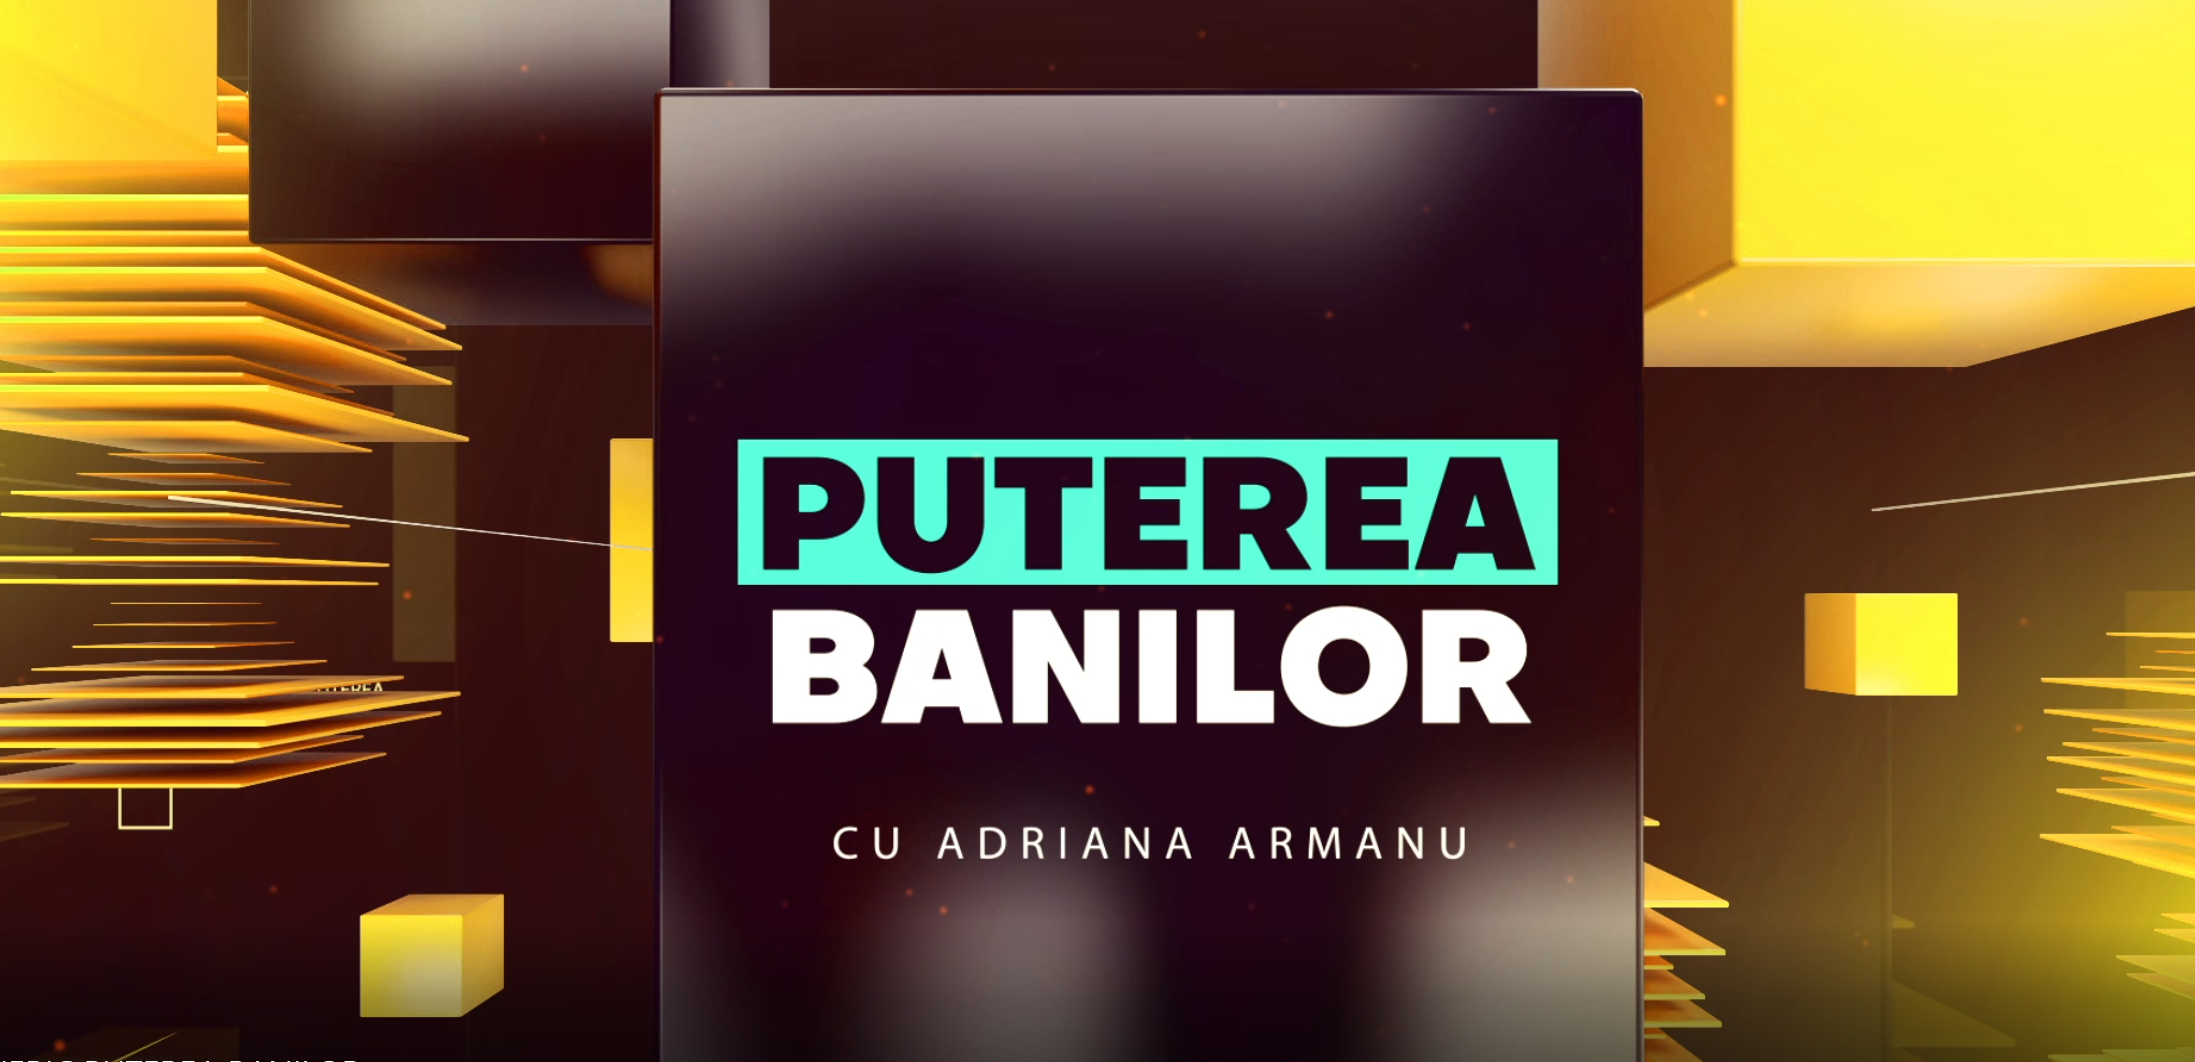 PS News TV | Puterea Banilor cu Adriana Armanu